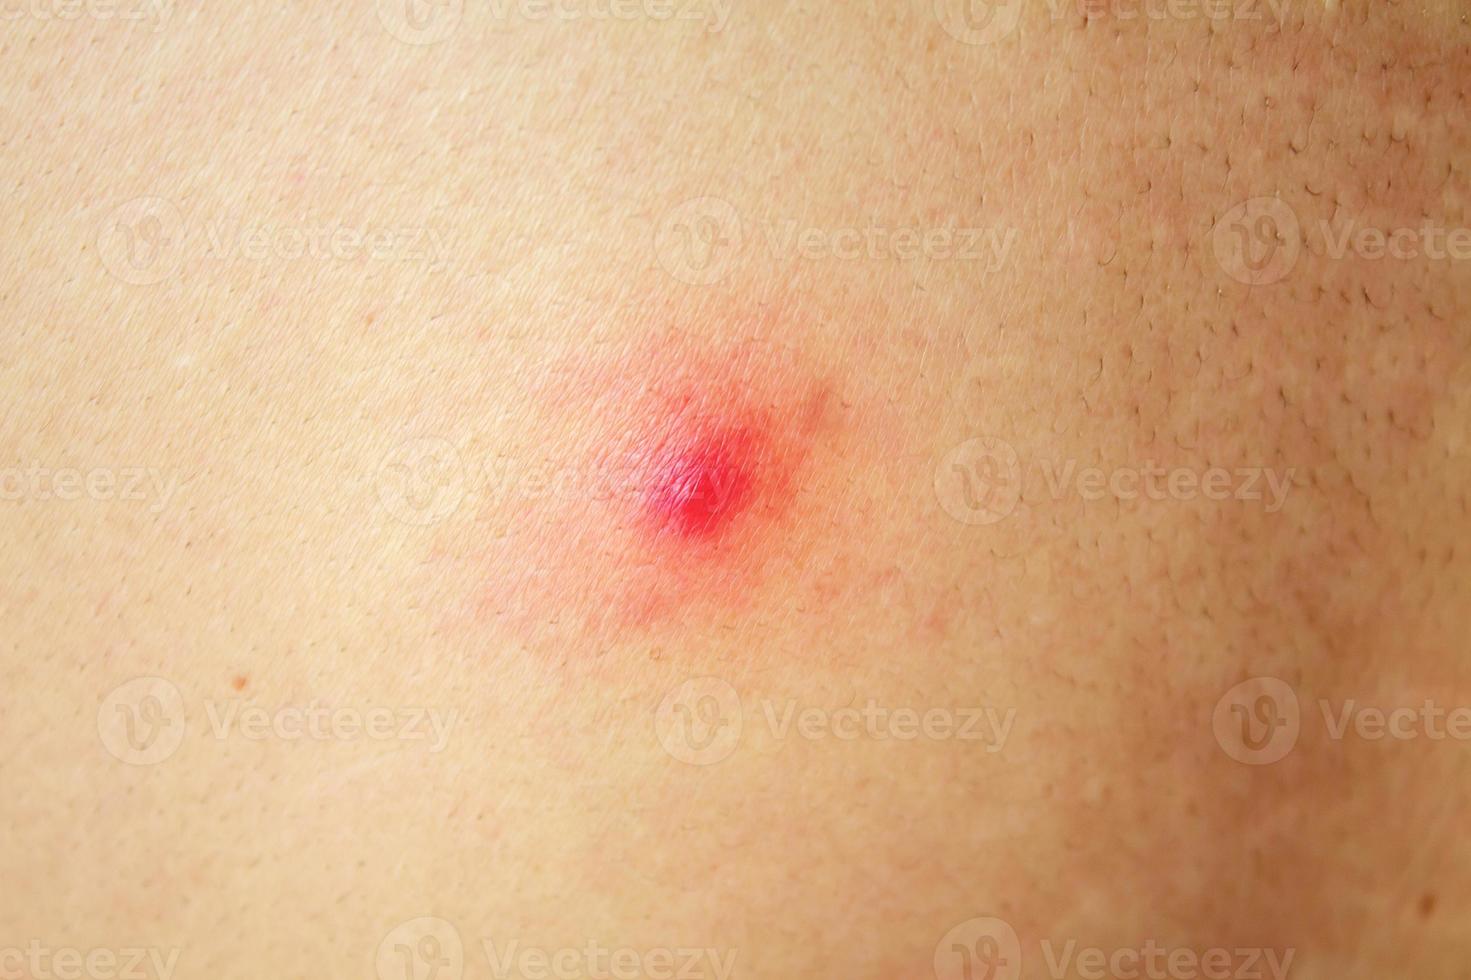 acne com manchas vermelhas nas costas foto